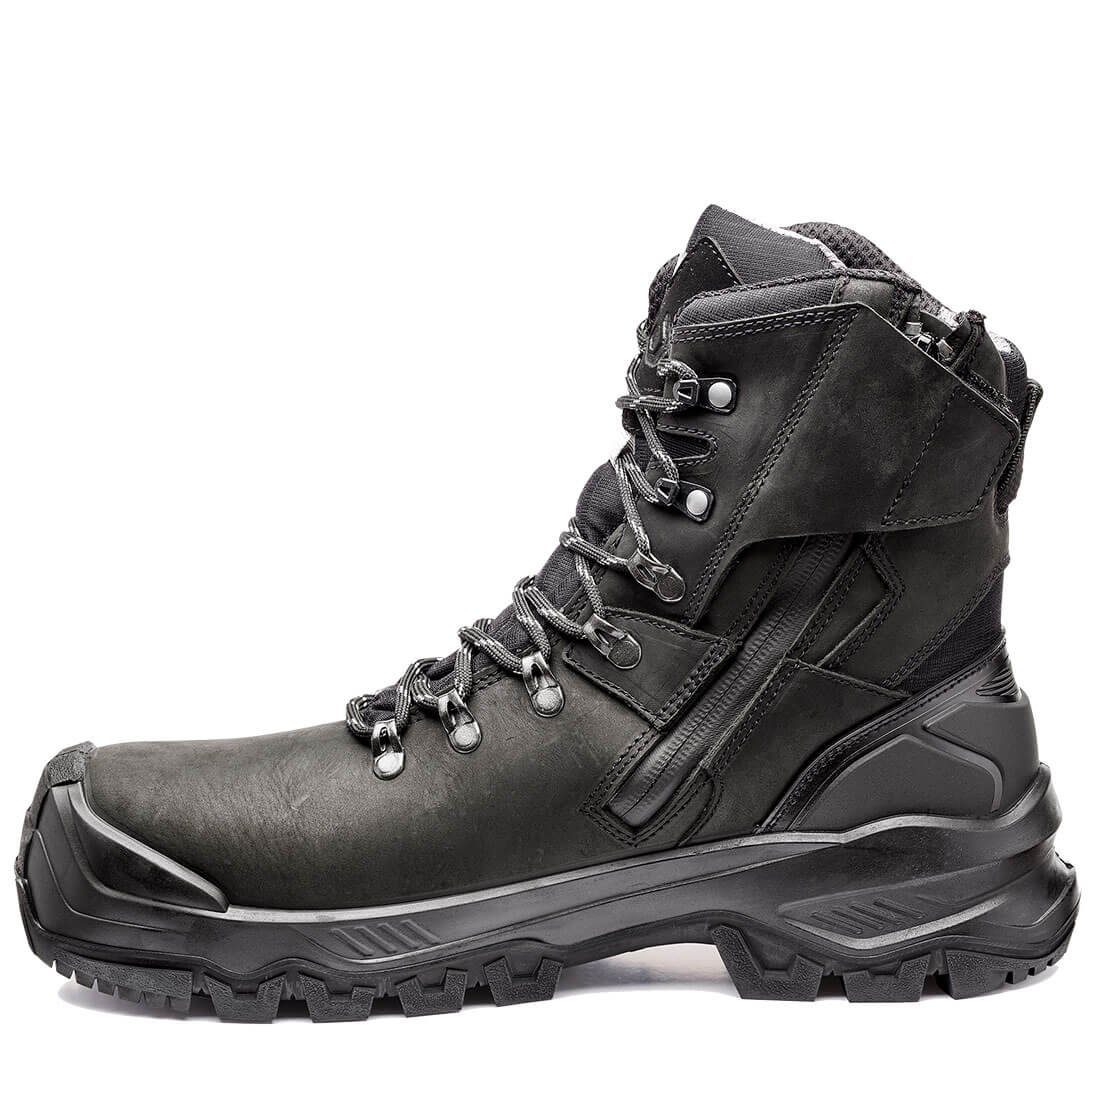 Base Footwear Sicherheitsschuhe B1611 - Rutchhemmend, Durchtrittsicher, T-MASSIVE Wasserabweisend, Kälteisoliert Sicherheitsschuh Wärmeisolierend, Allroundshoes